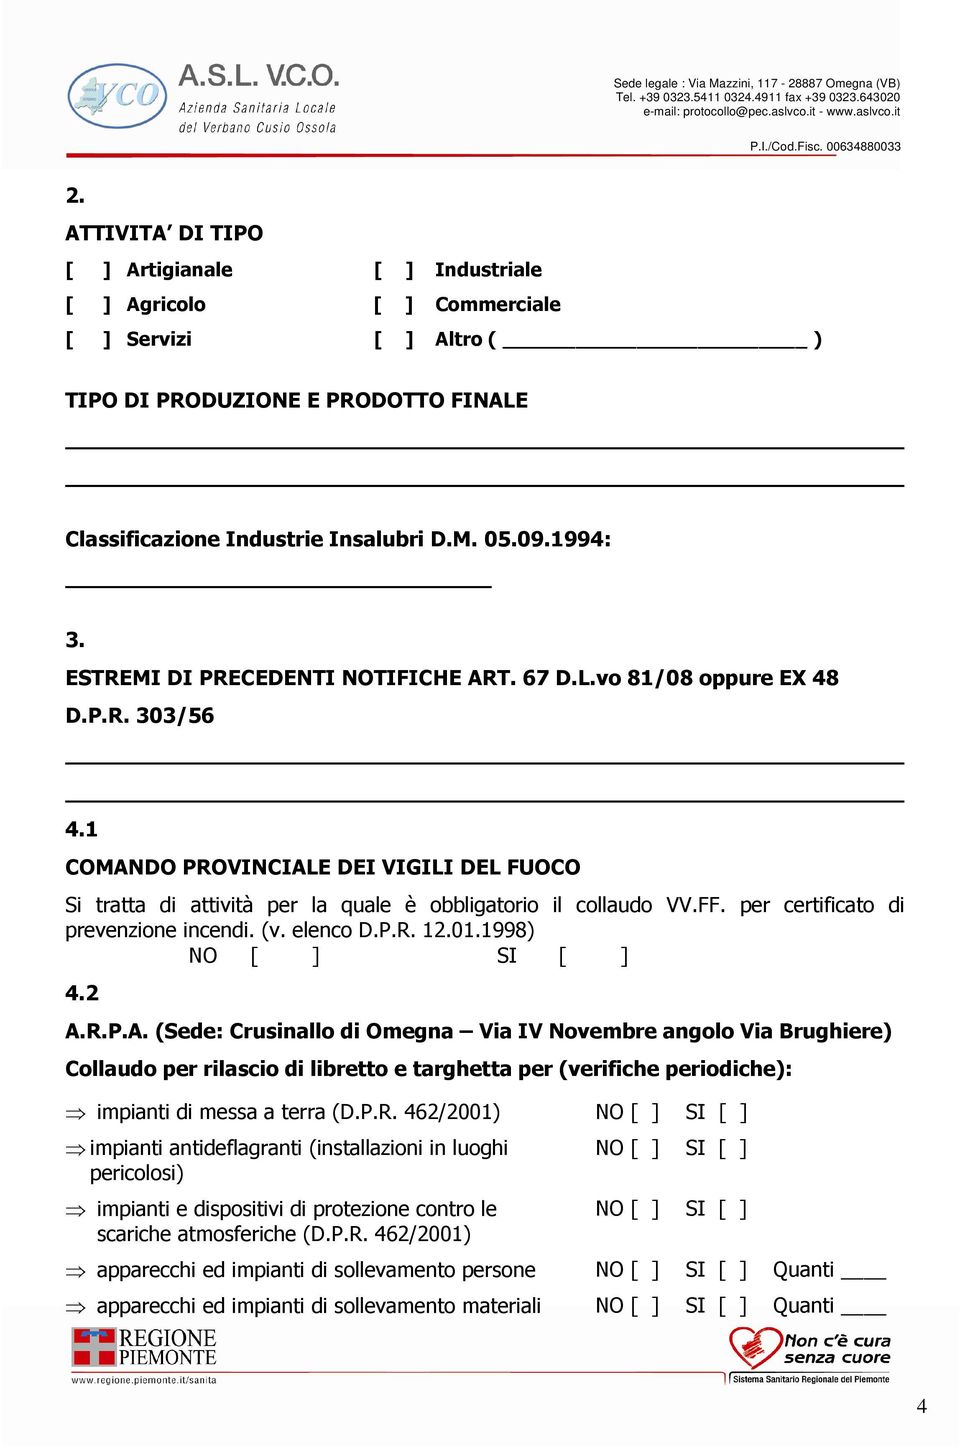 per certificato di prevenzione incendi. (v. elenco D.P.R. 12.01.1998) NO [ ] SI [ ] 4.2 A.